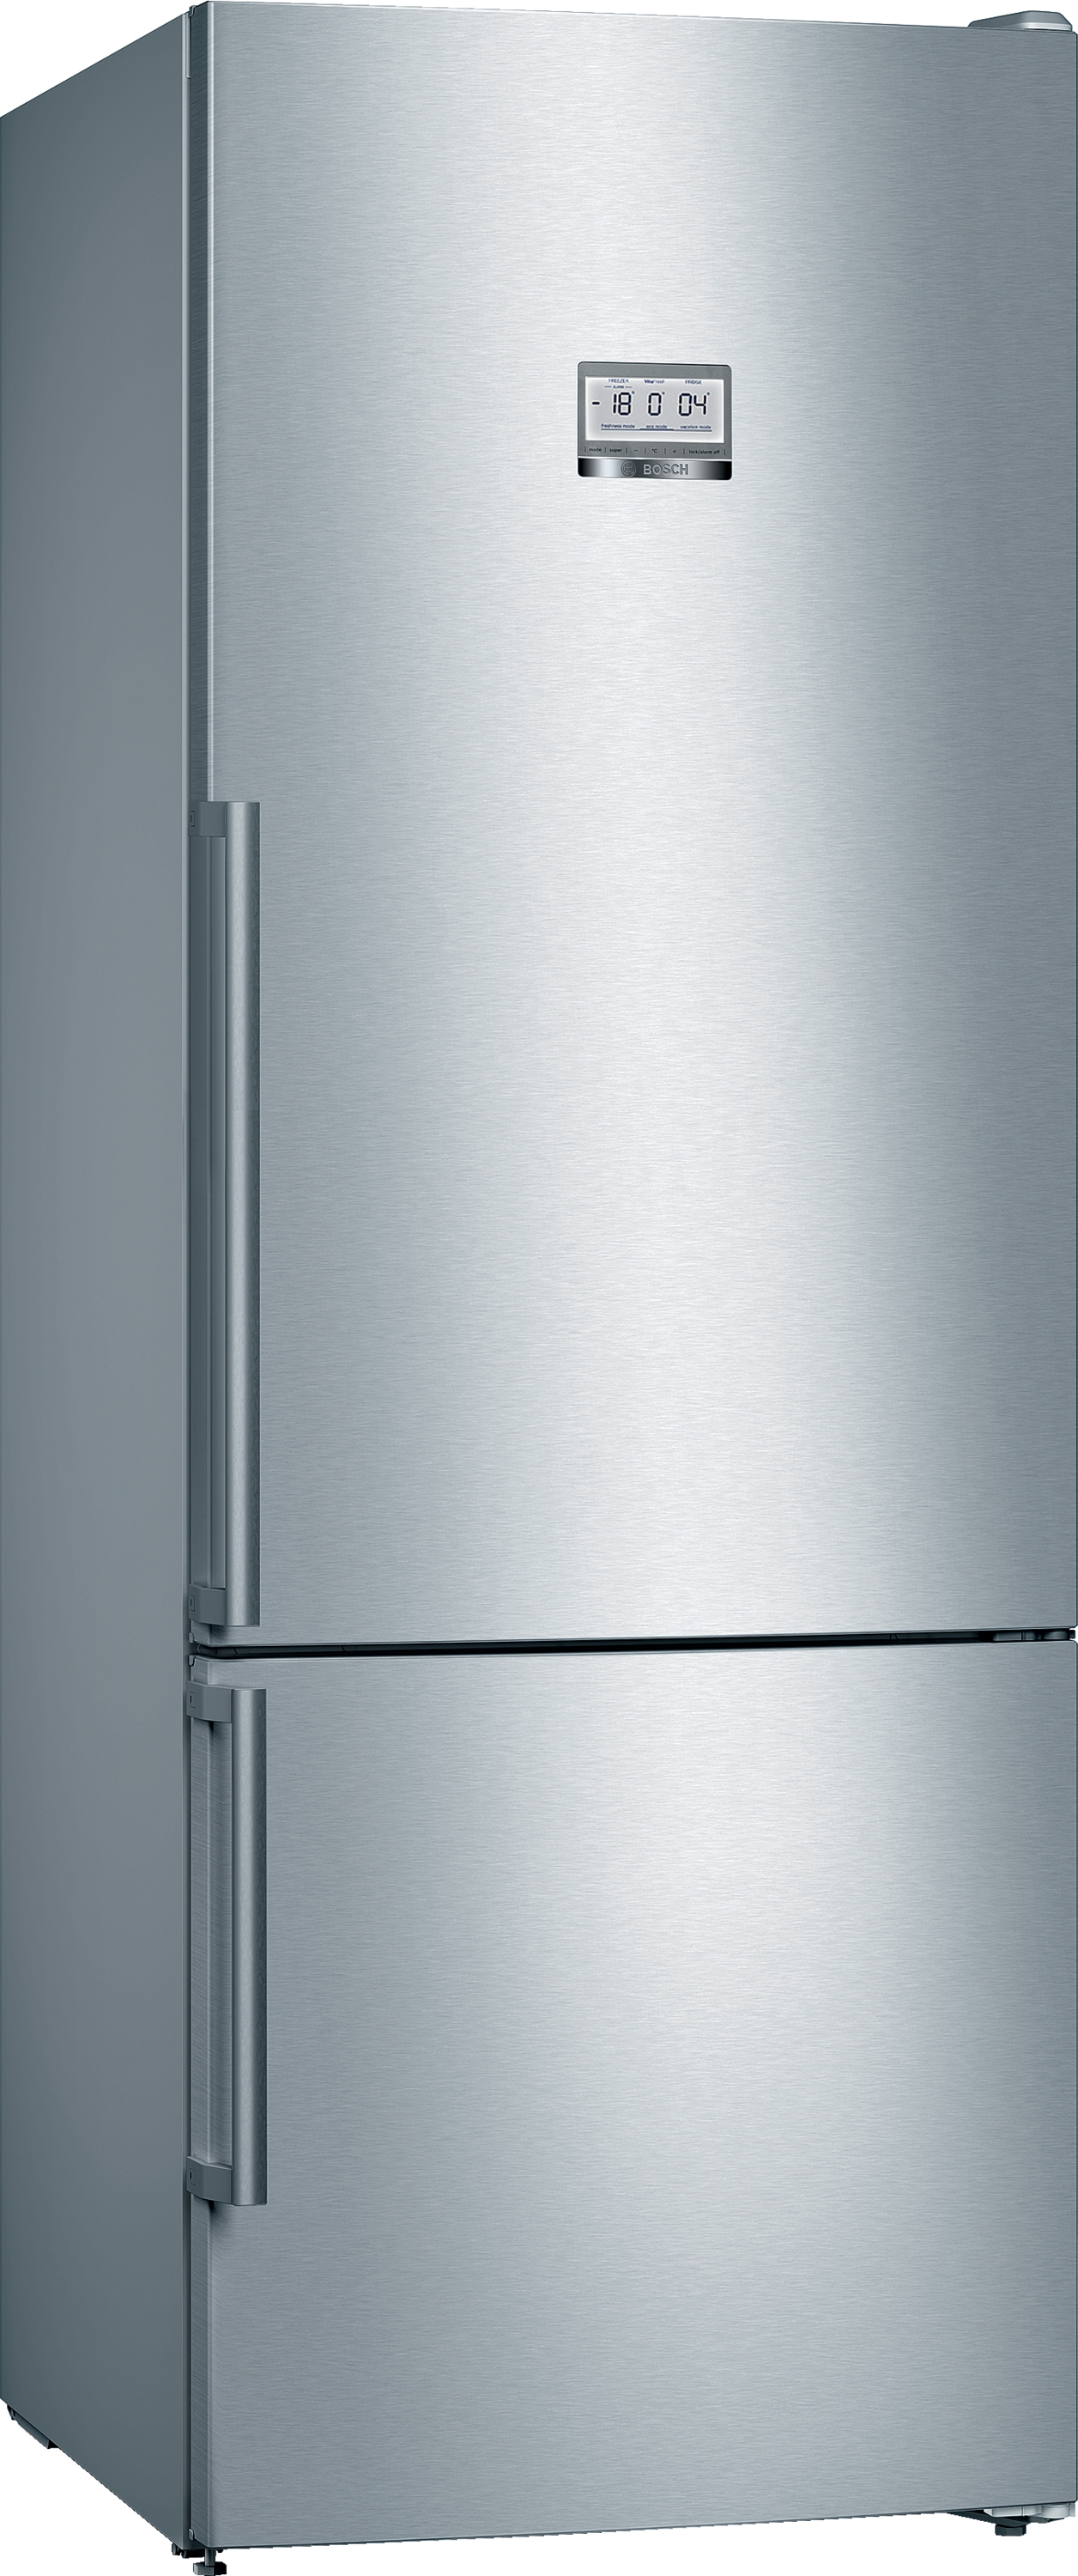 KGF56PIDP Combină frigorifică independentă 193 x 70 cm Inox AntiAmprentă5 ANI GARANTIE. Clasa Energetica D